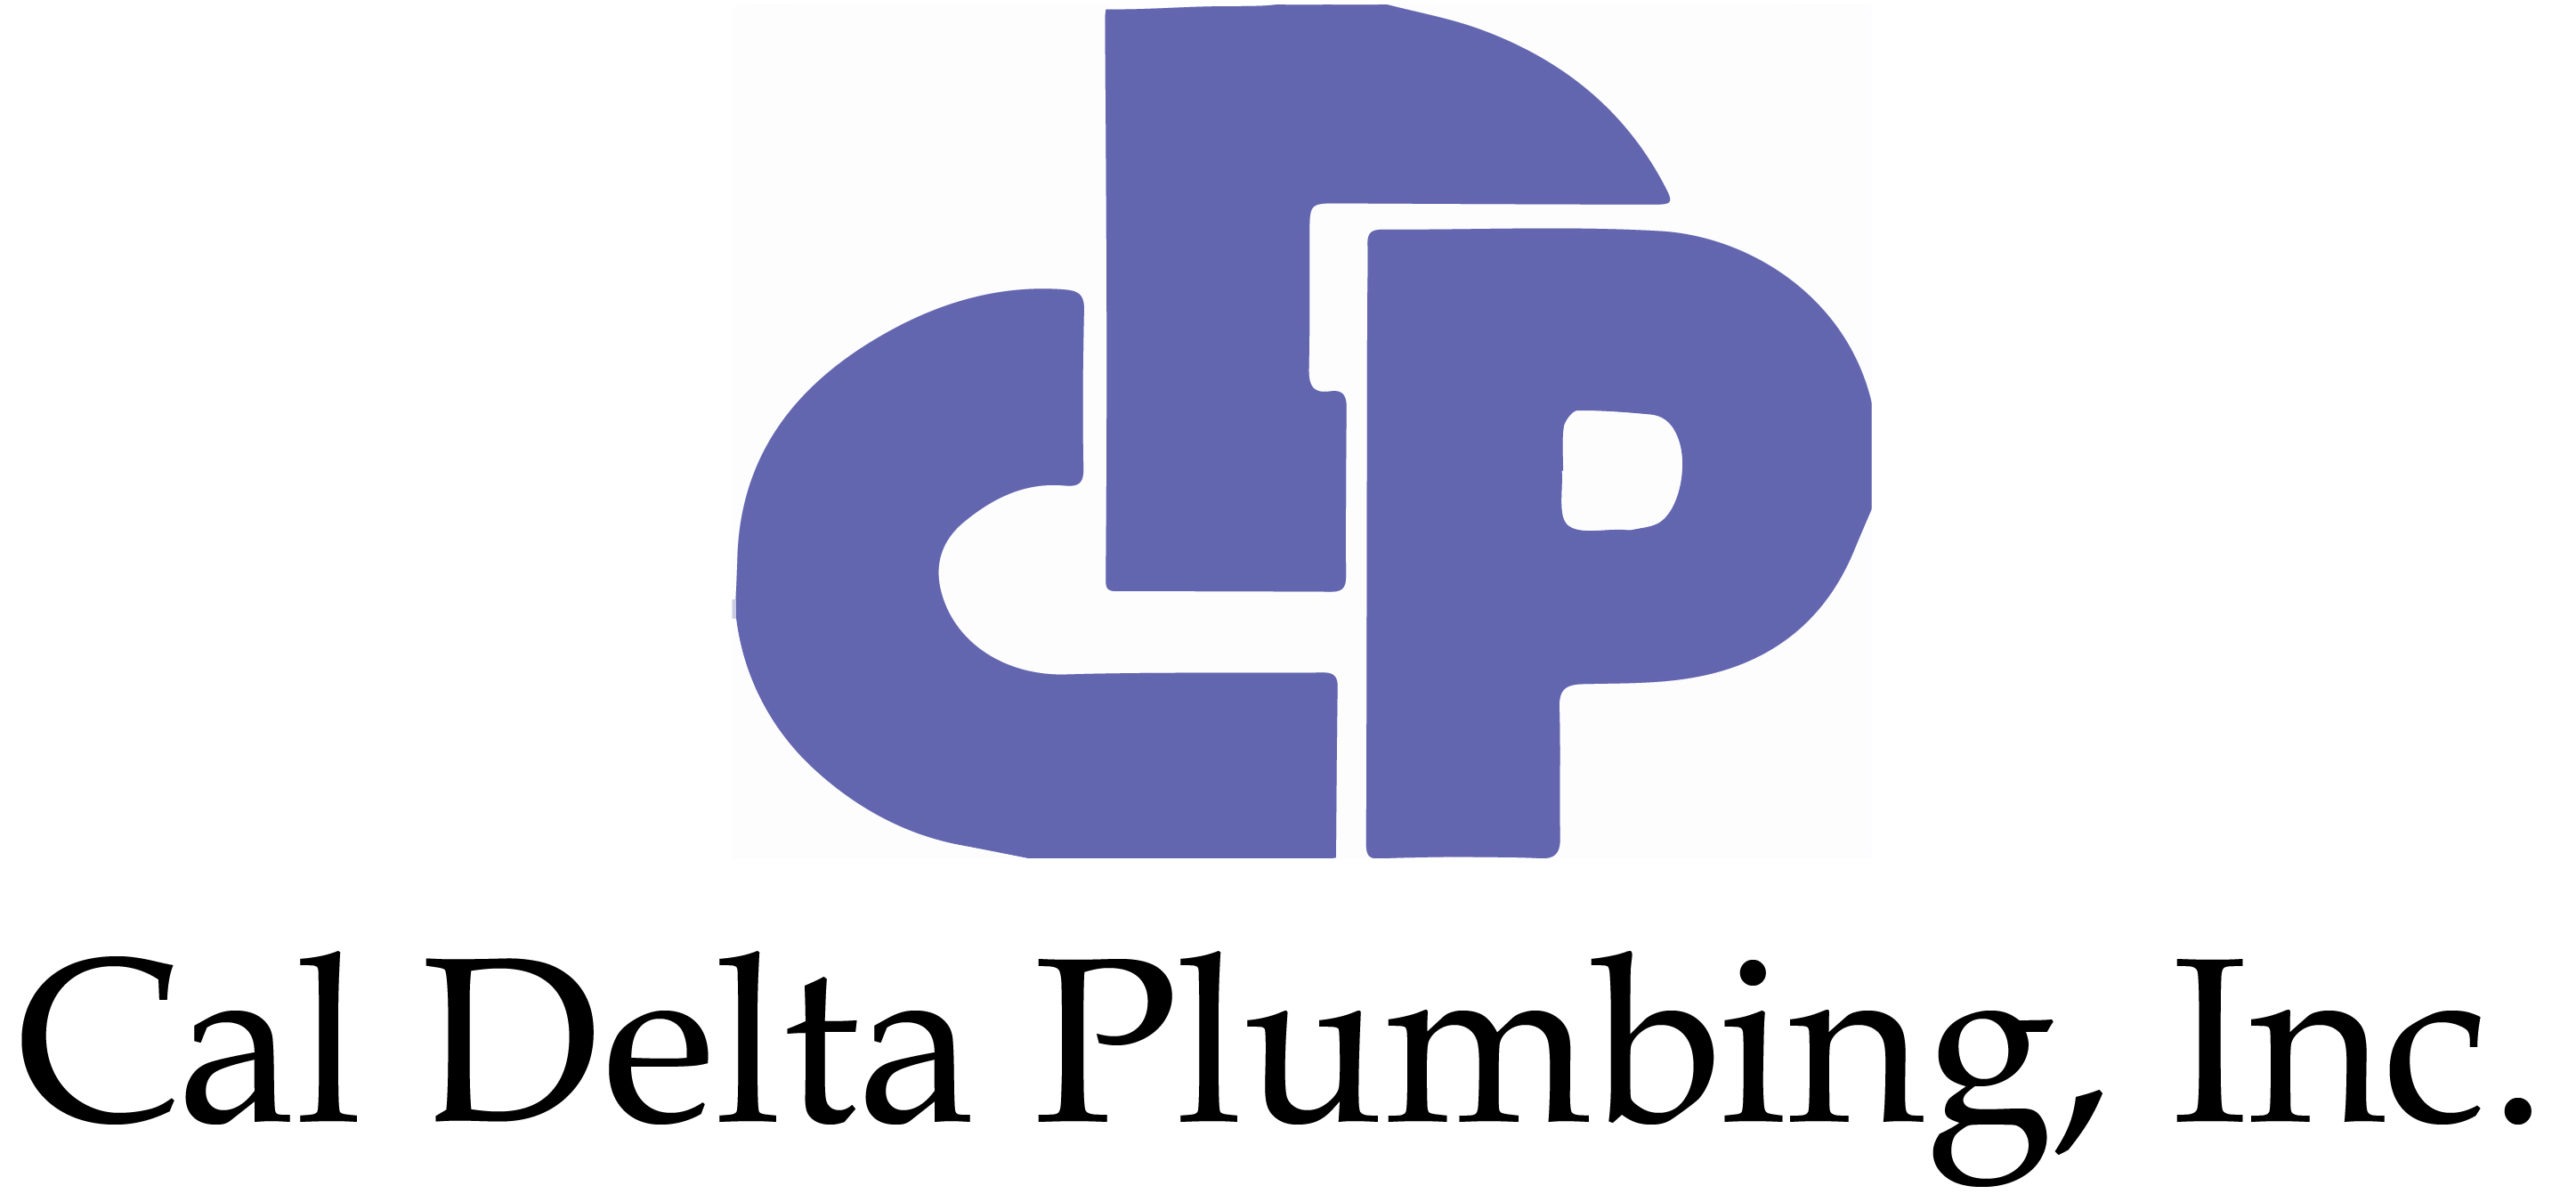 Cal Delta Plumbing